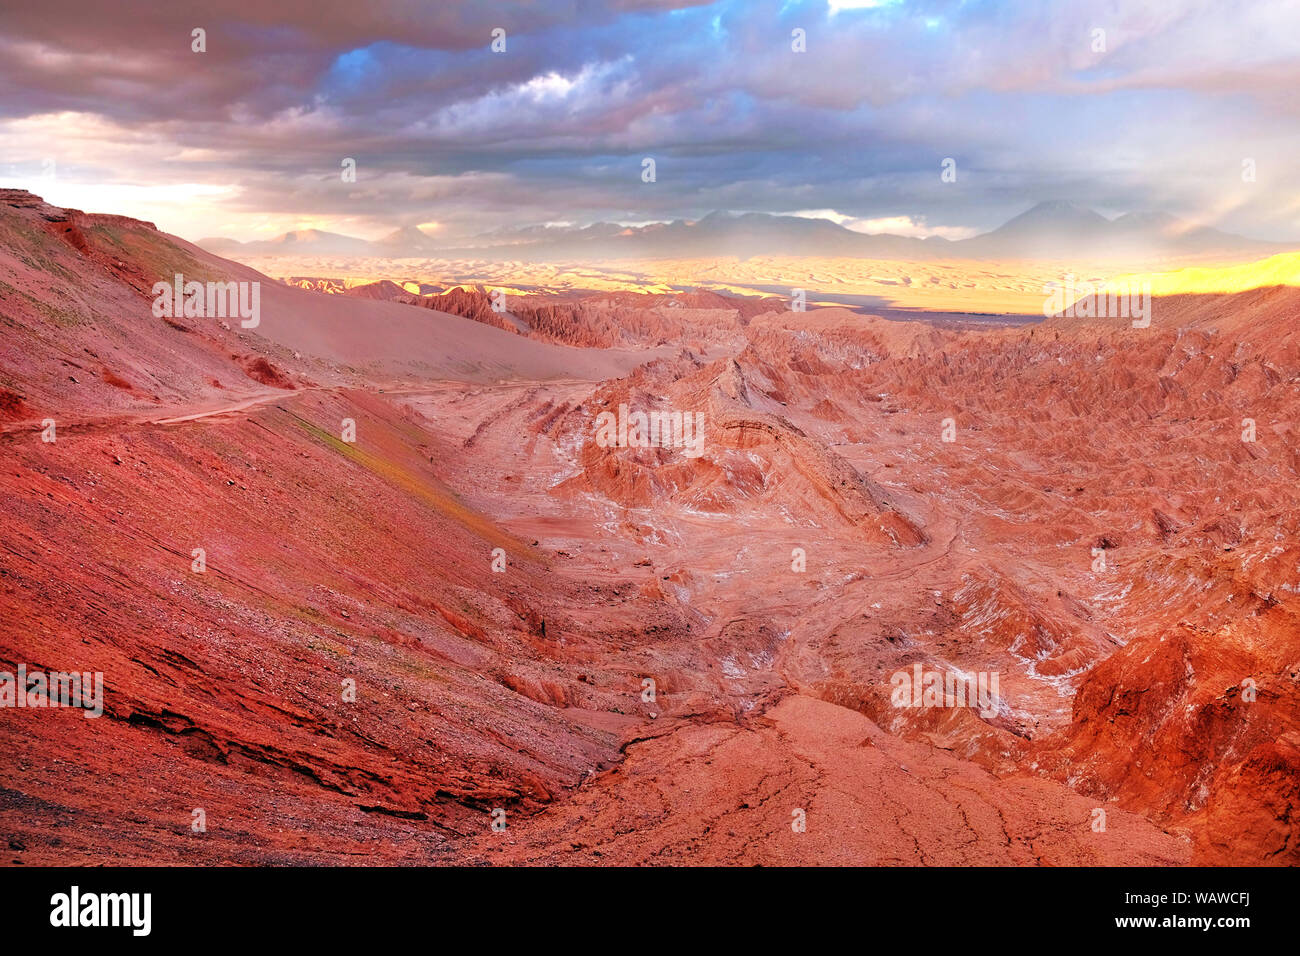 Wüstenlandschaft des Mars Tal in rot und orange Farben in der Nähe von San Pedro de Atacama im Norden von Chile, gegen einen dramatischen Sonnenuntergang Himmel c Stockfoto